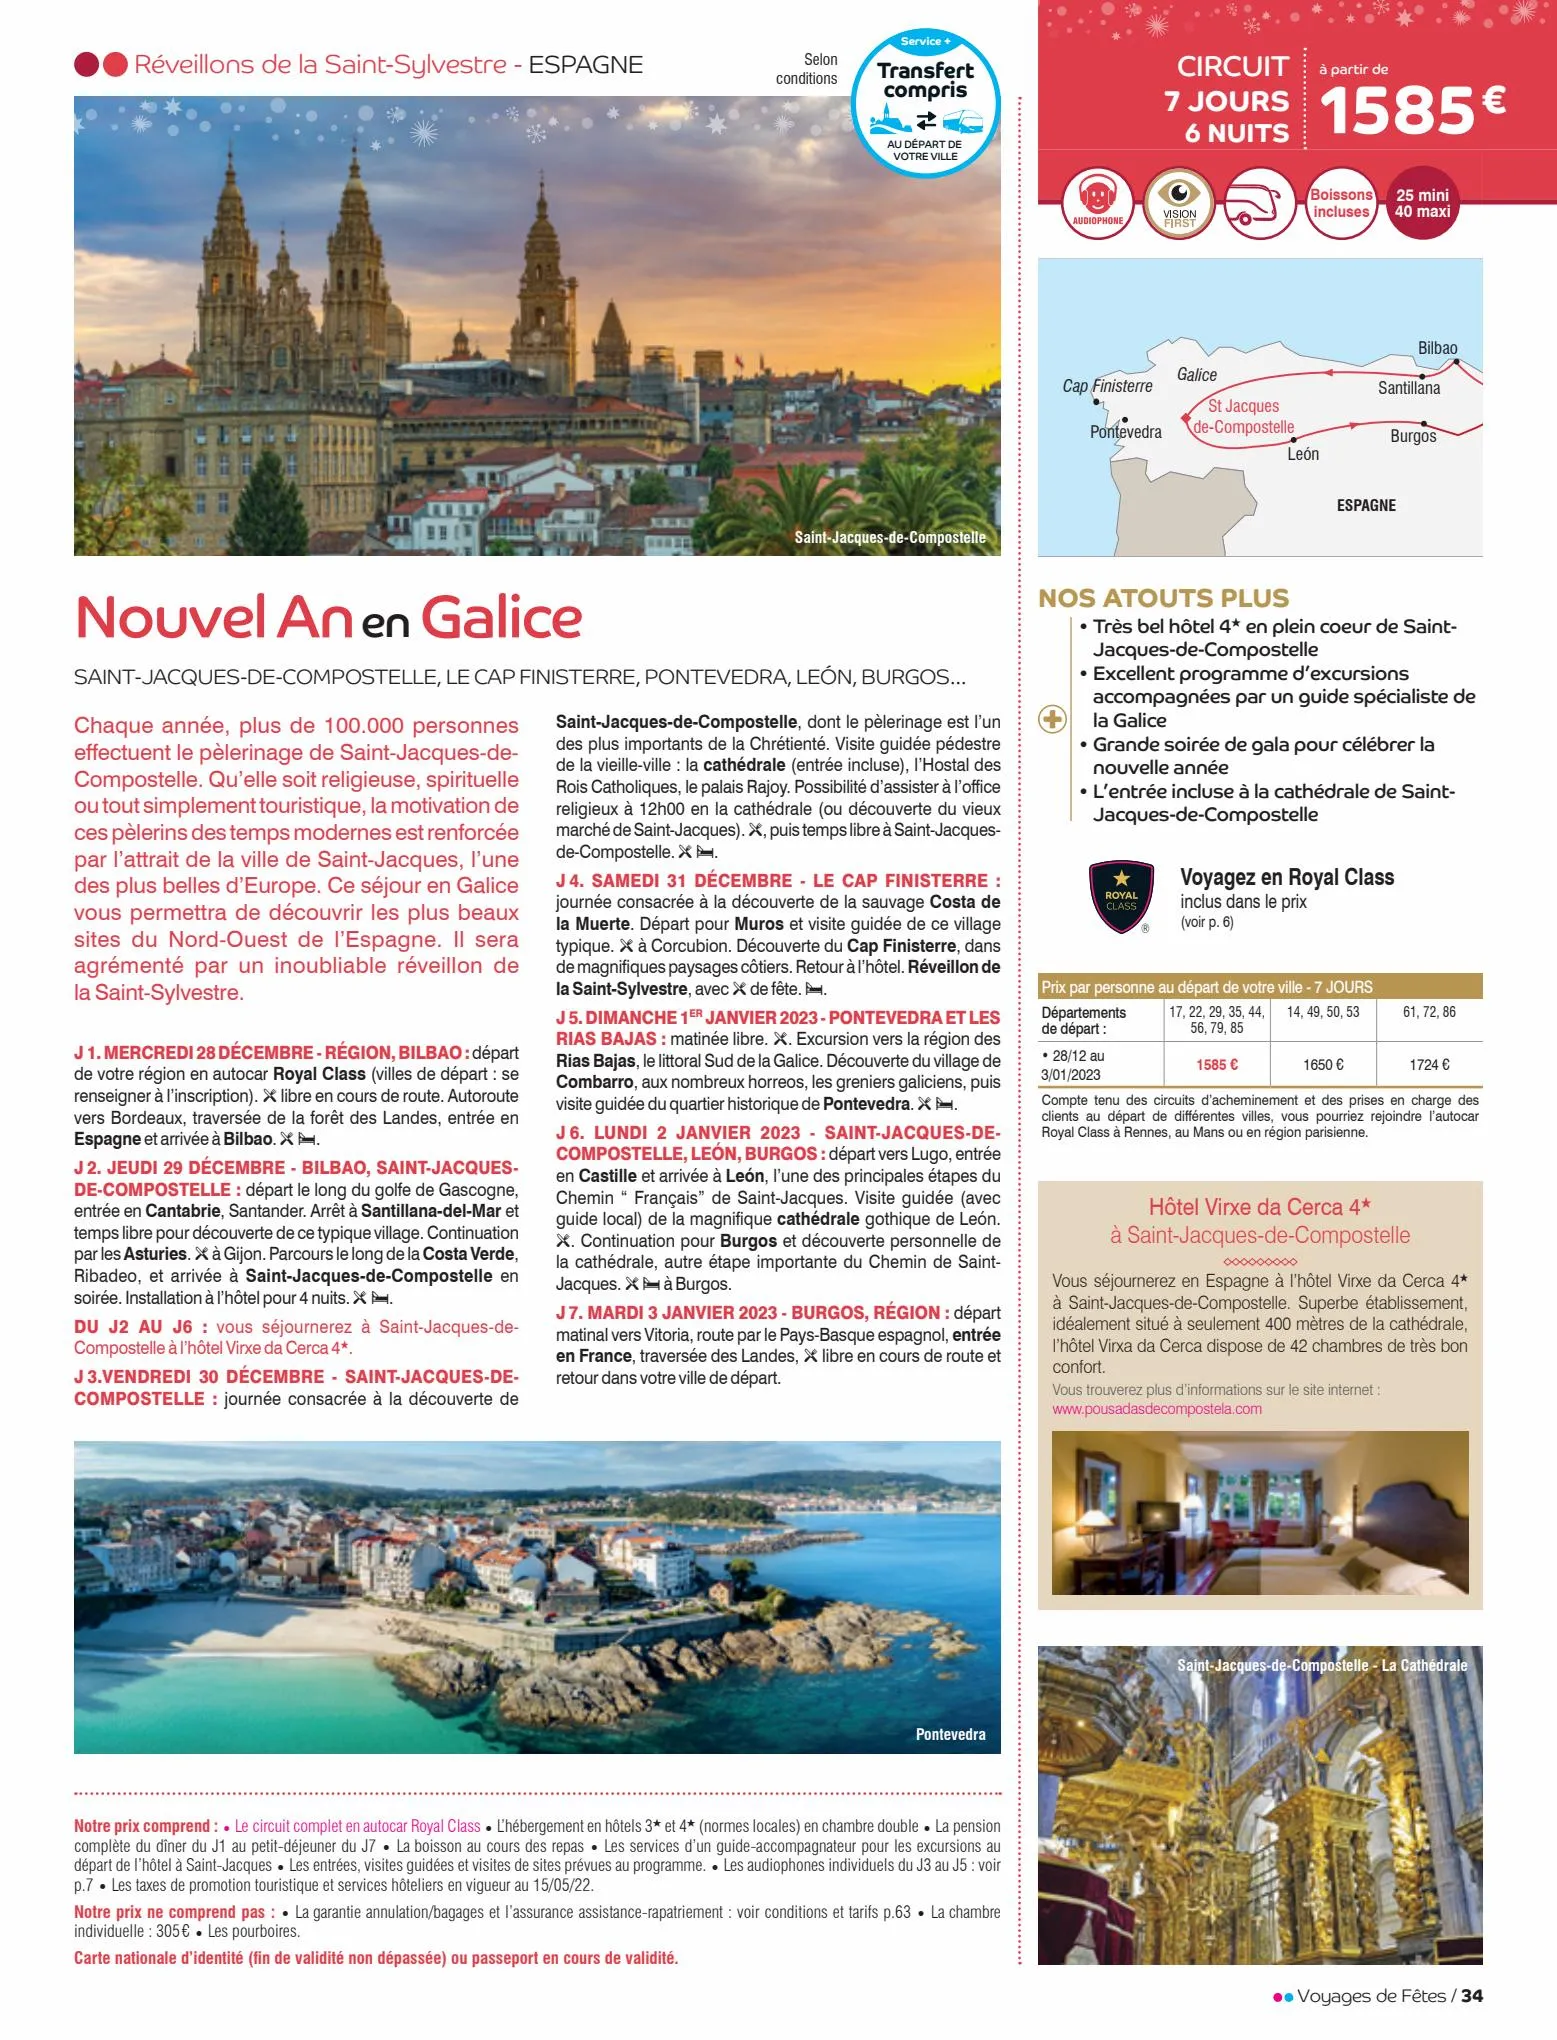 Catalogue Voyages de fêtes 2022-2023, page 00034